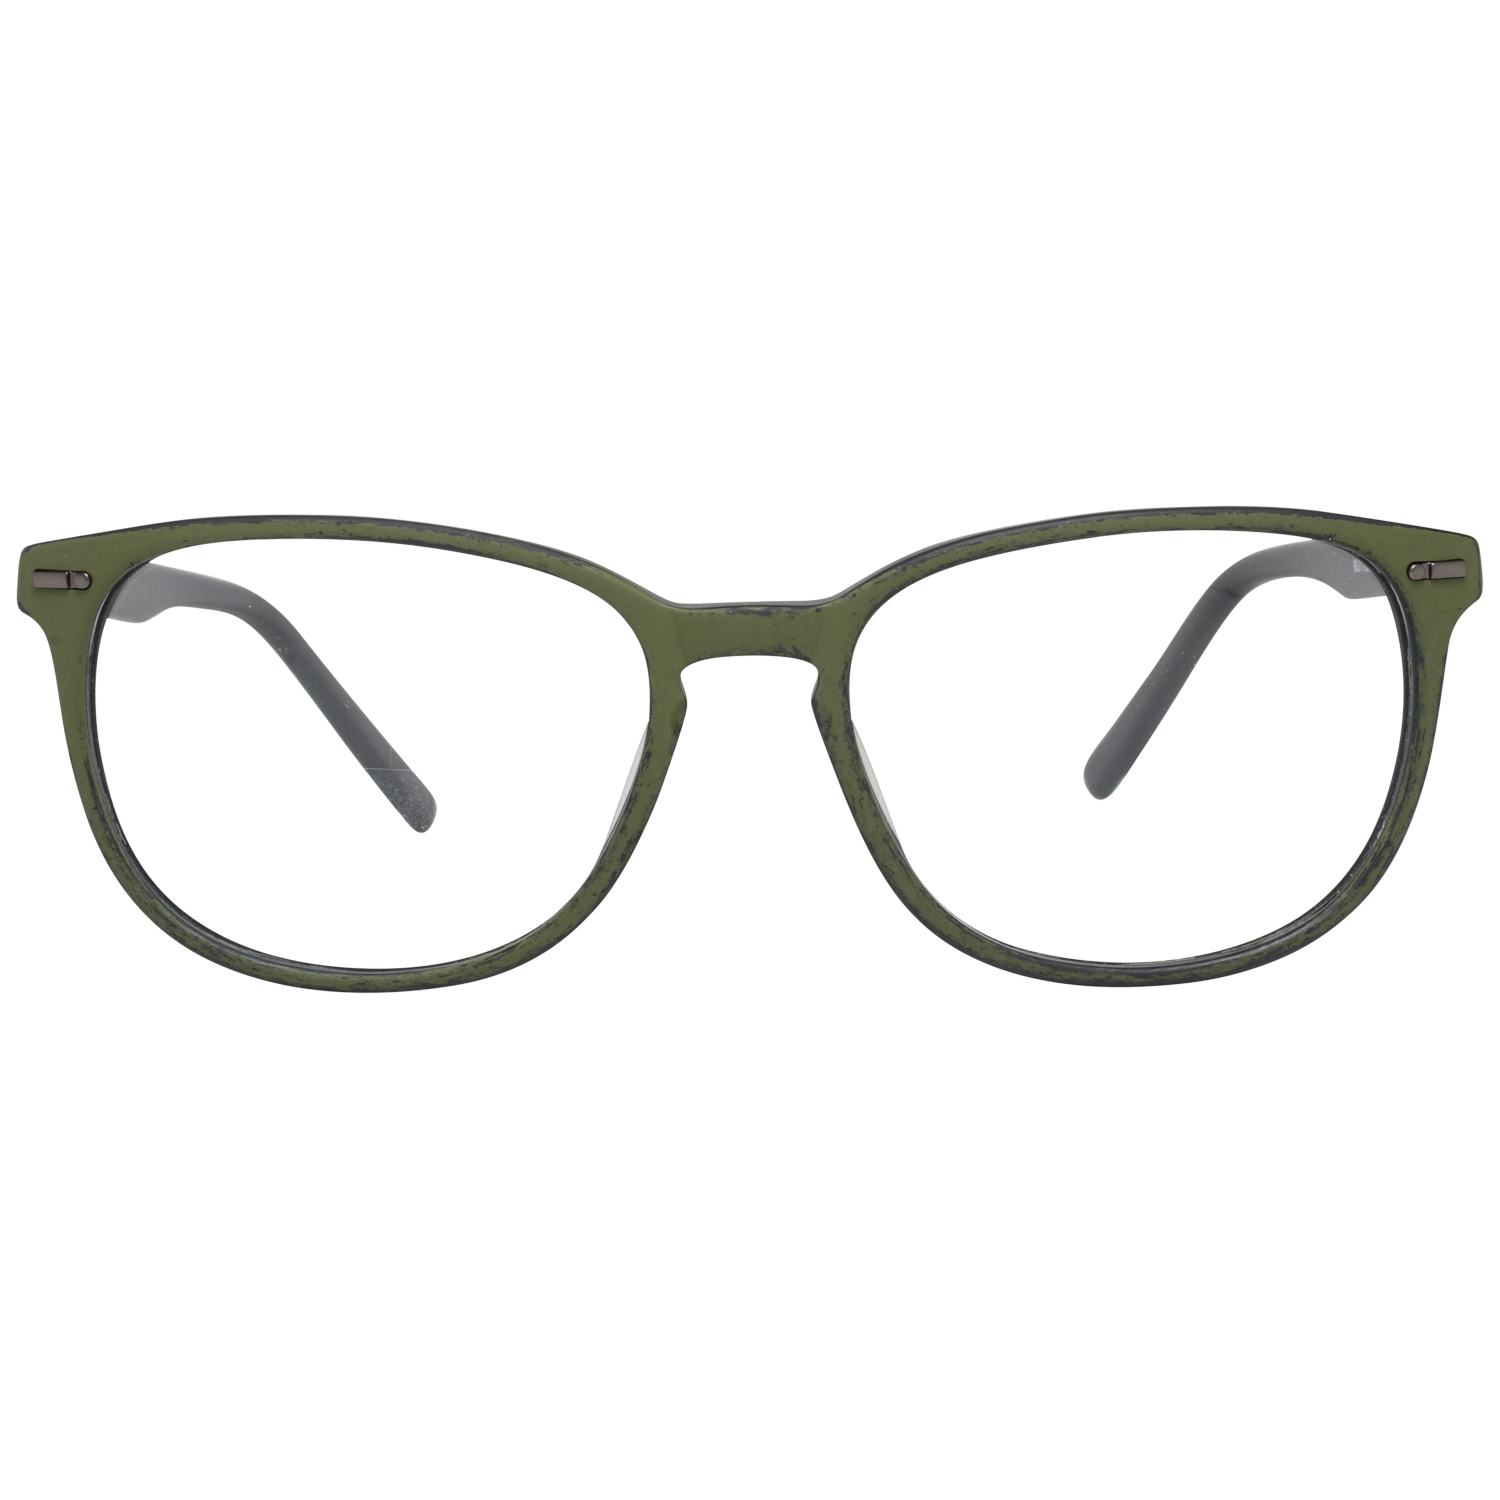 Sting Frames Sting Optical Frame VST040 6X3M 53 Eyeglasses Eyewear UK USA Australia 